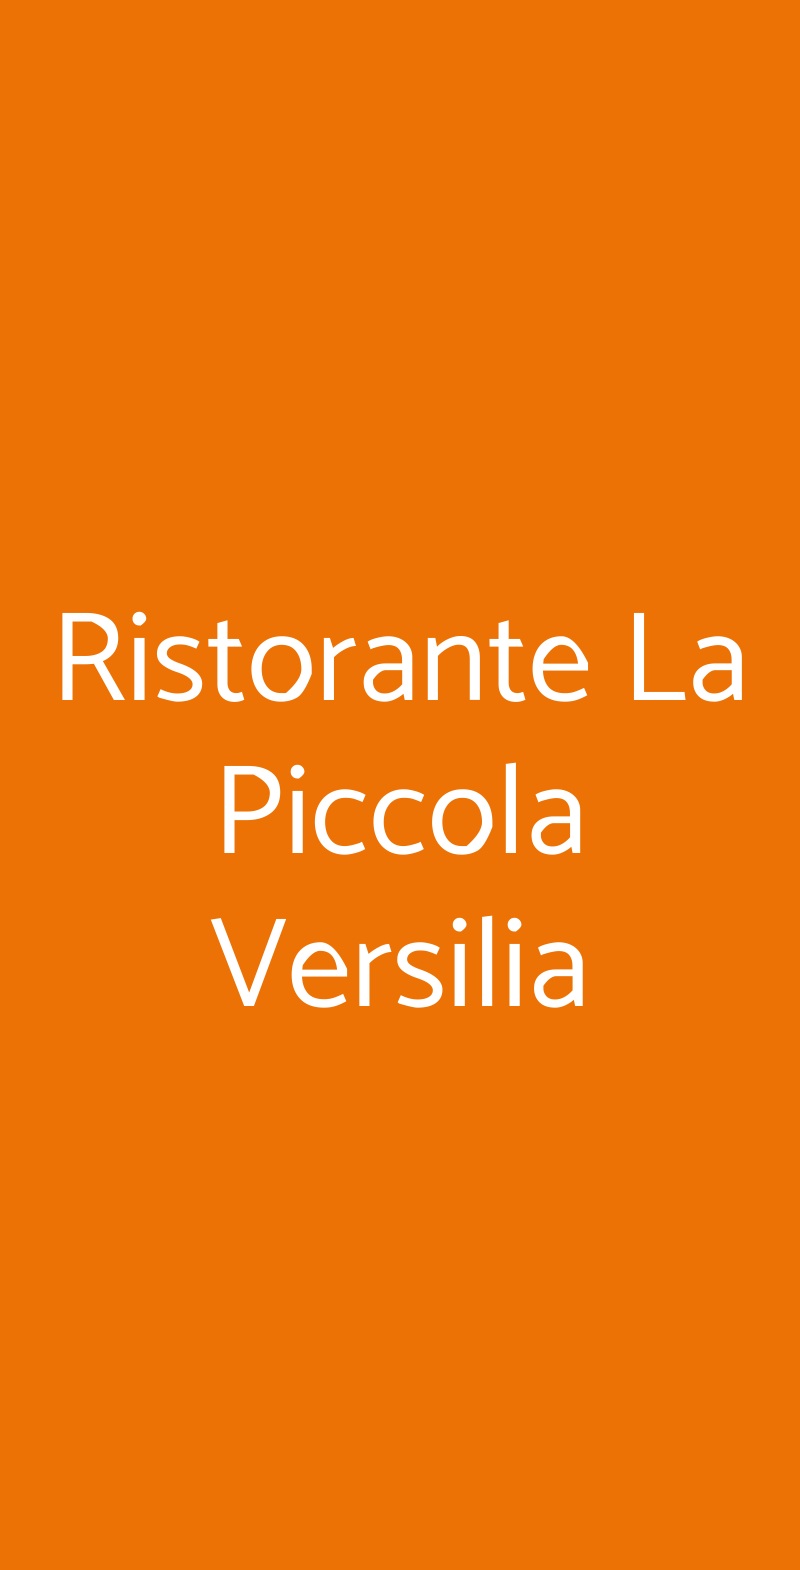 Ristorante La Piccola Versilia Milano menù 1 pagina